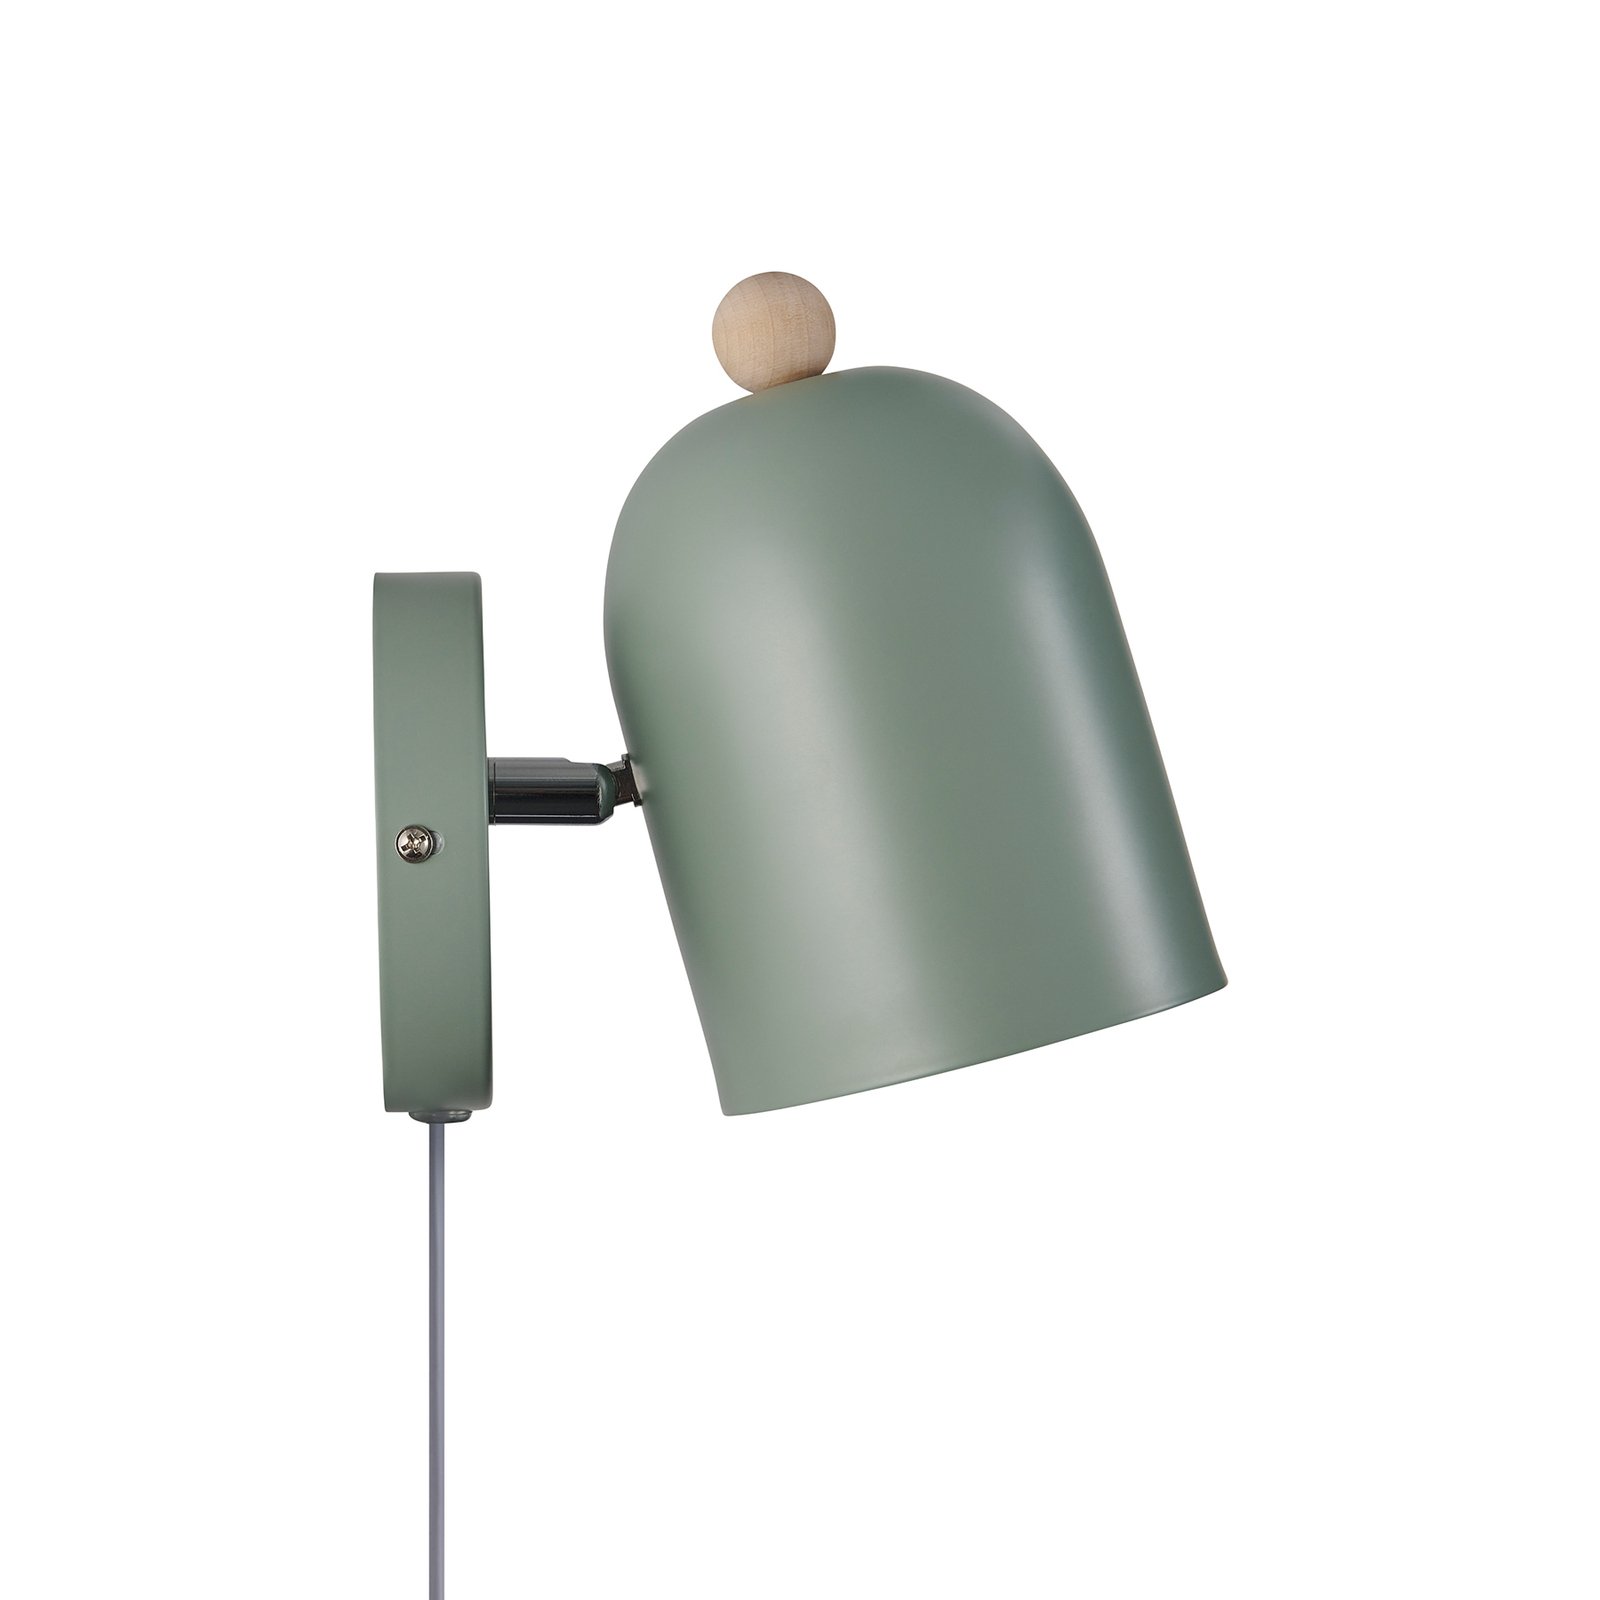 Stenska svetilka Gaston s kablom in vtičem, kovinska, zelena